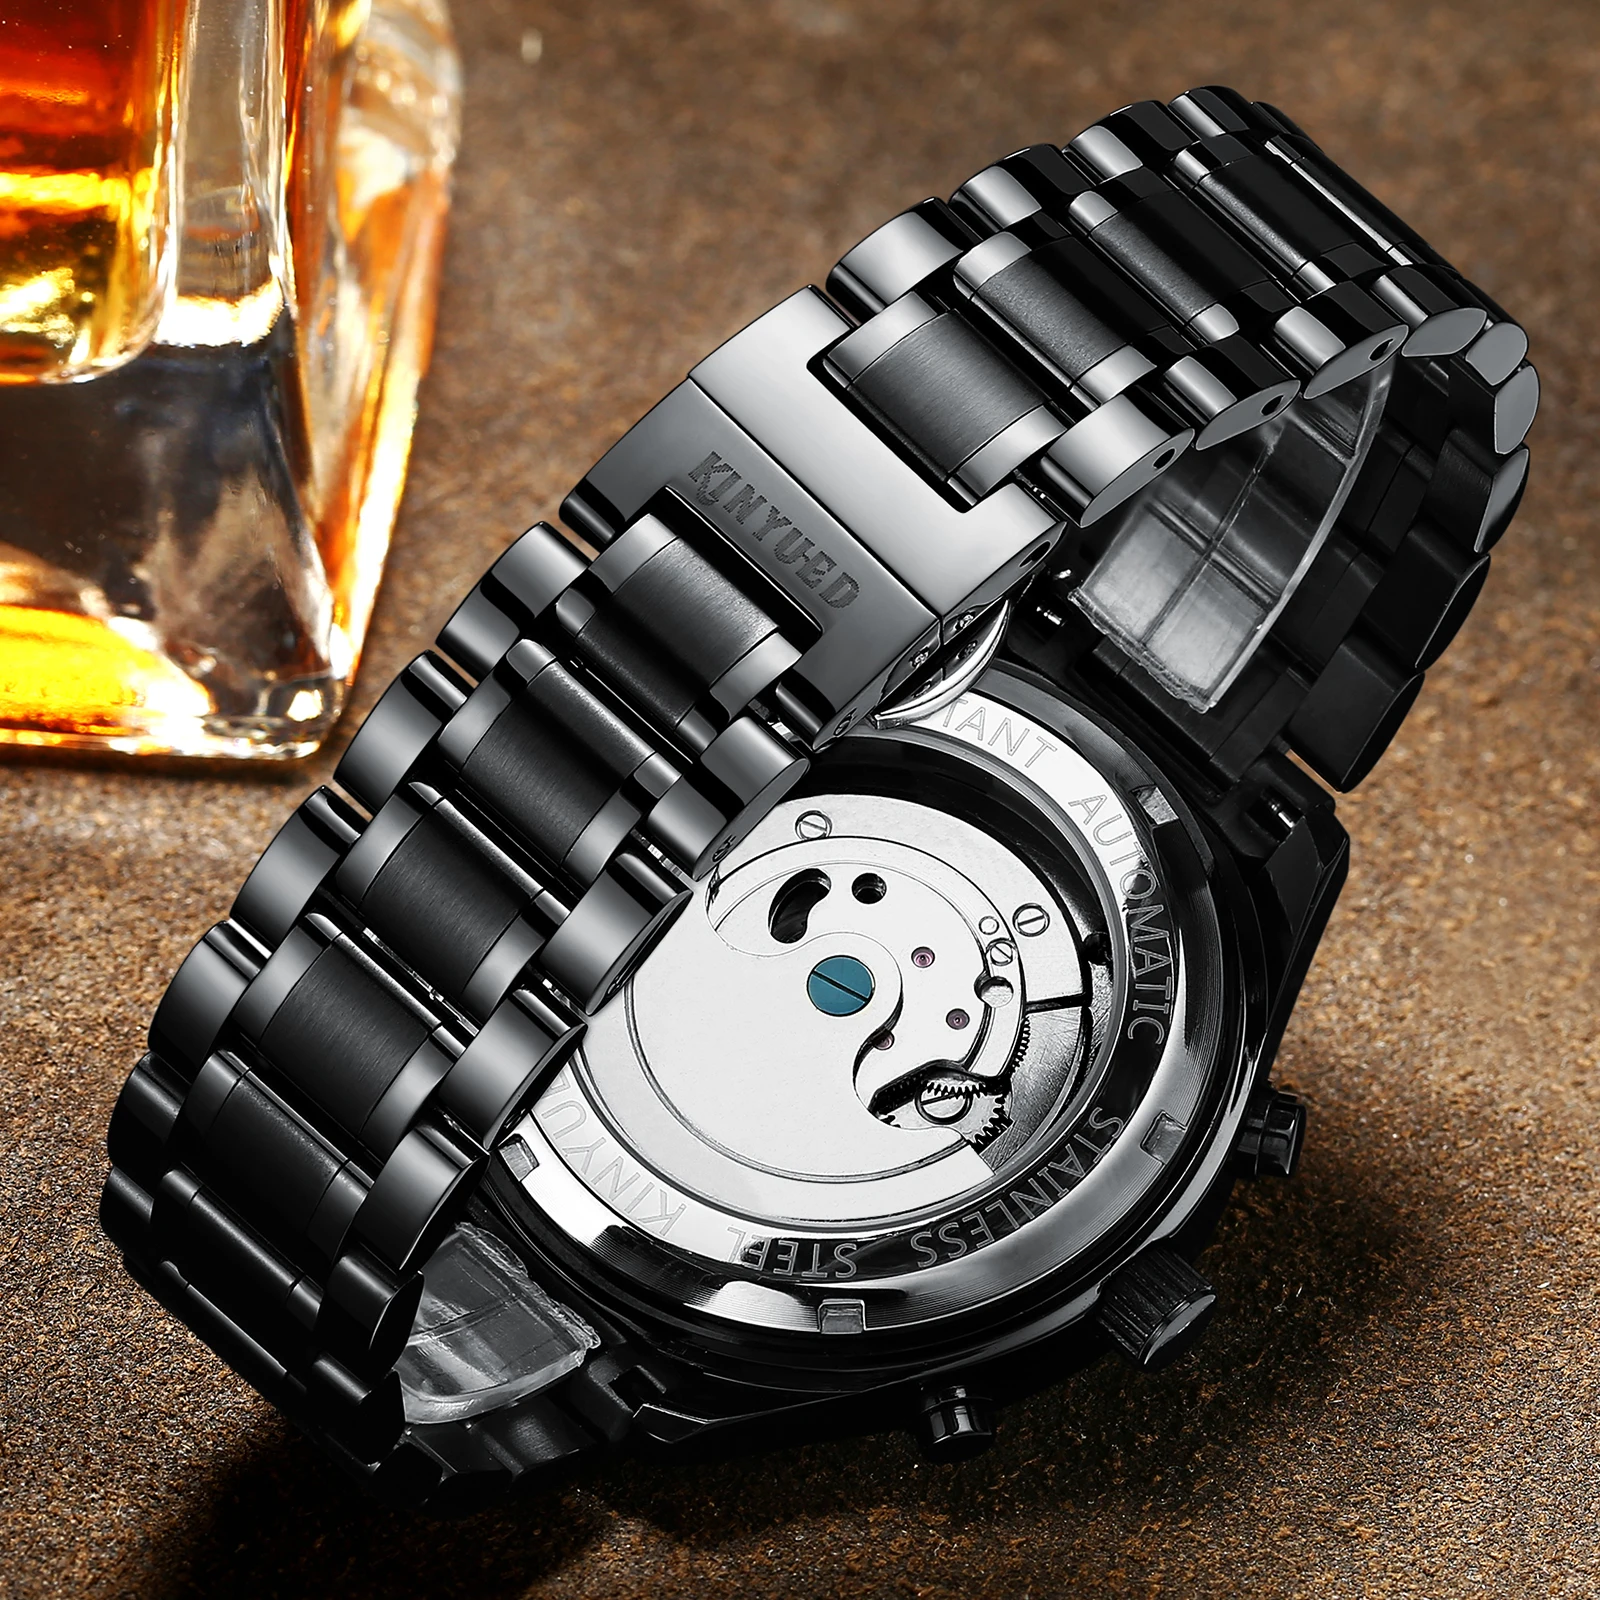 Kinyued Скелет автоматические часы Для мужчин Водонепроницаемый парящего турбийона Деловые часы Для мужчин S автоподзаводом horloges mannen челнока